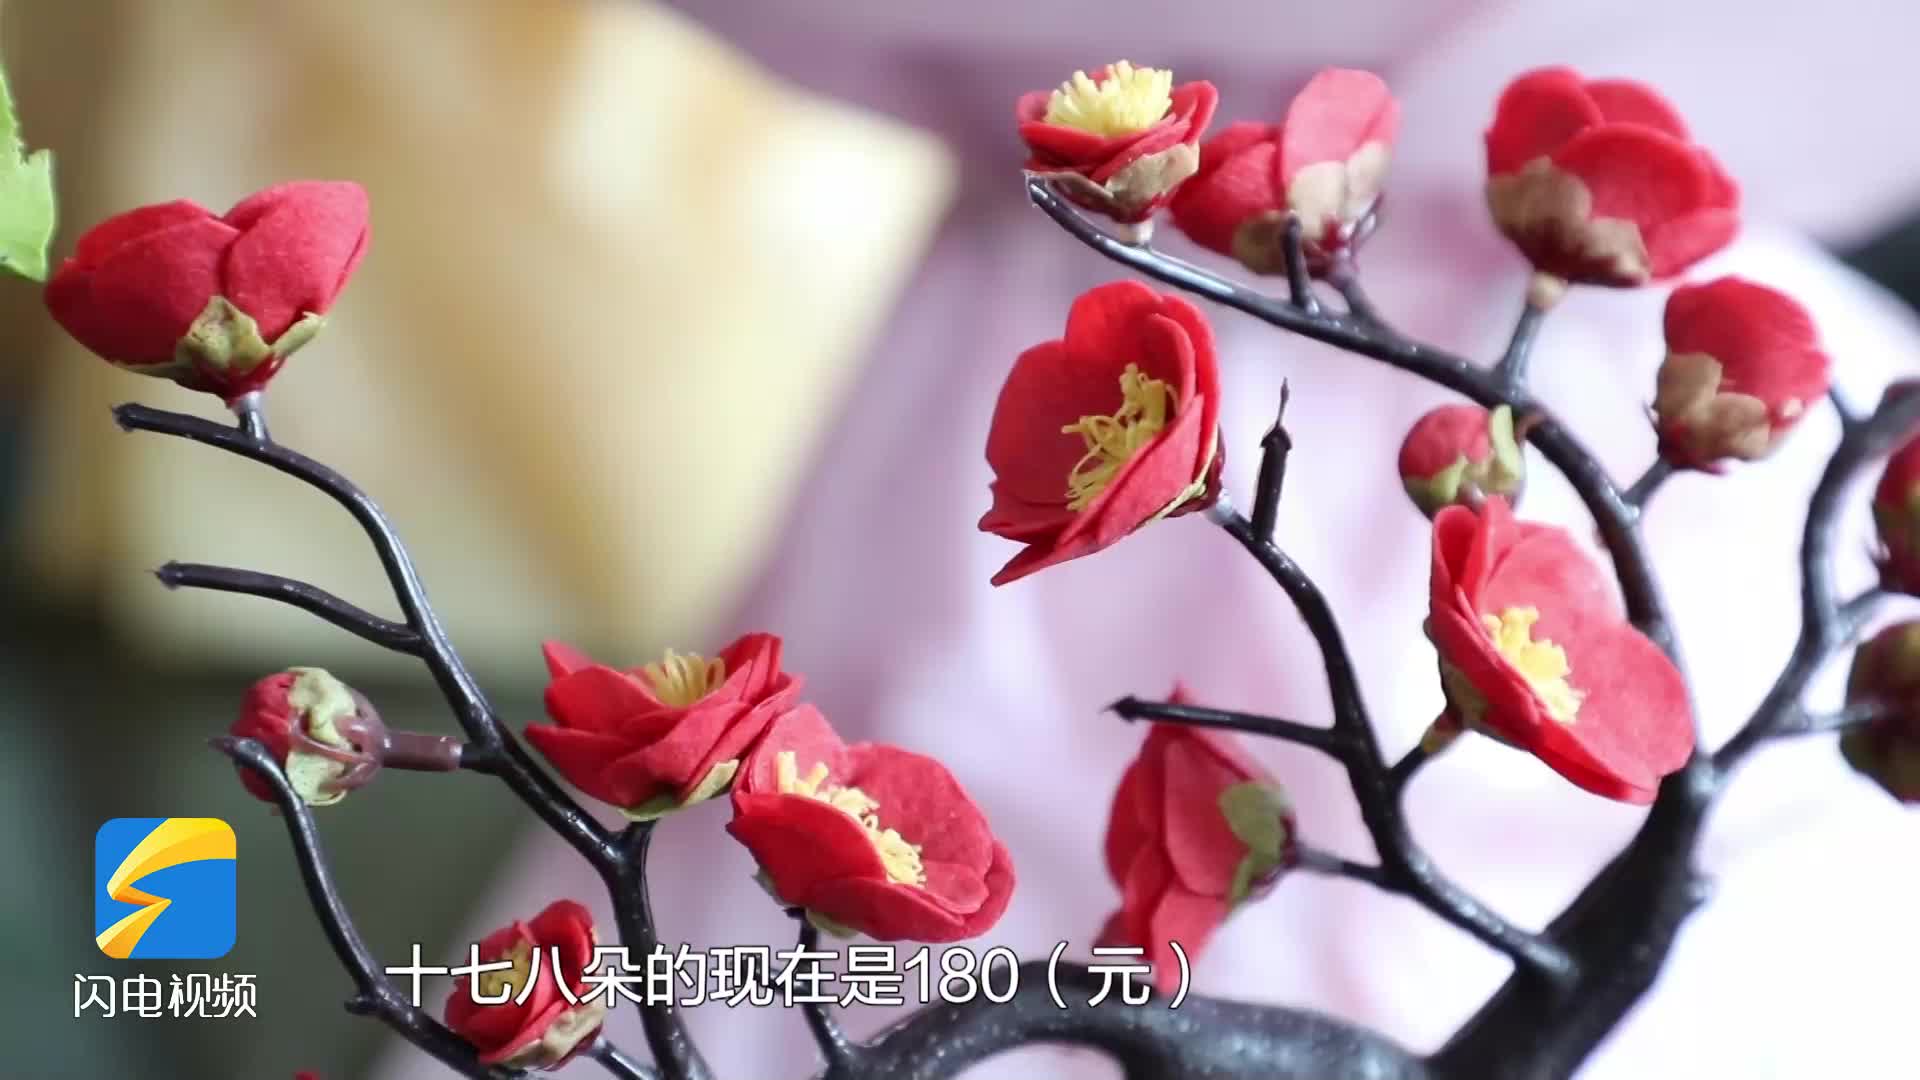 牡丹 玫瑰 梅花……新泰煎饼做出新“花”样 远销南方市场